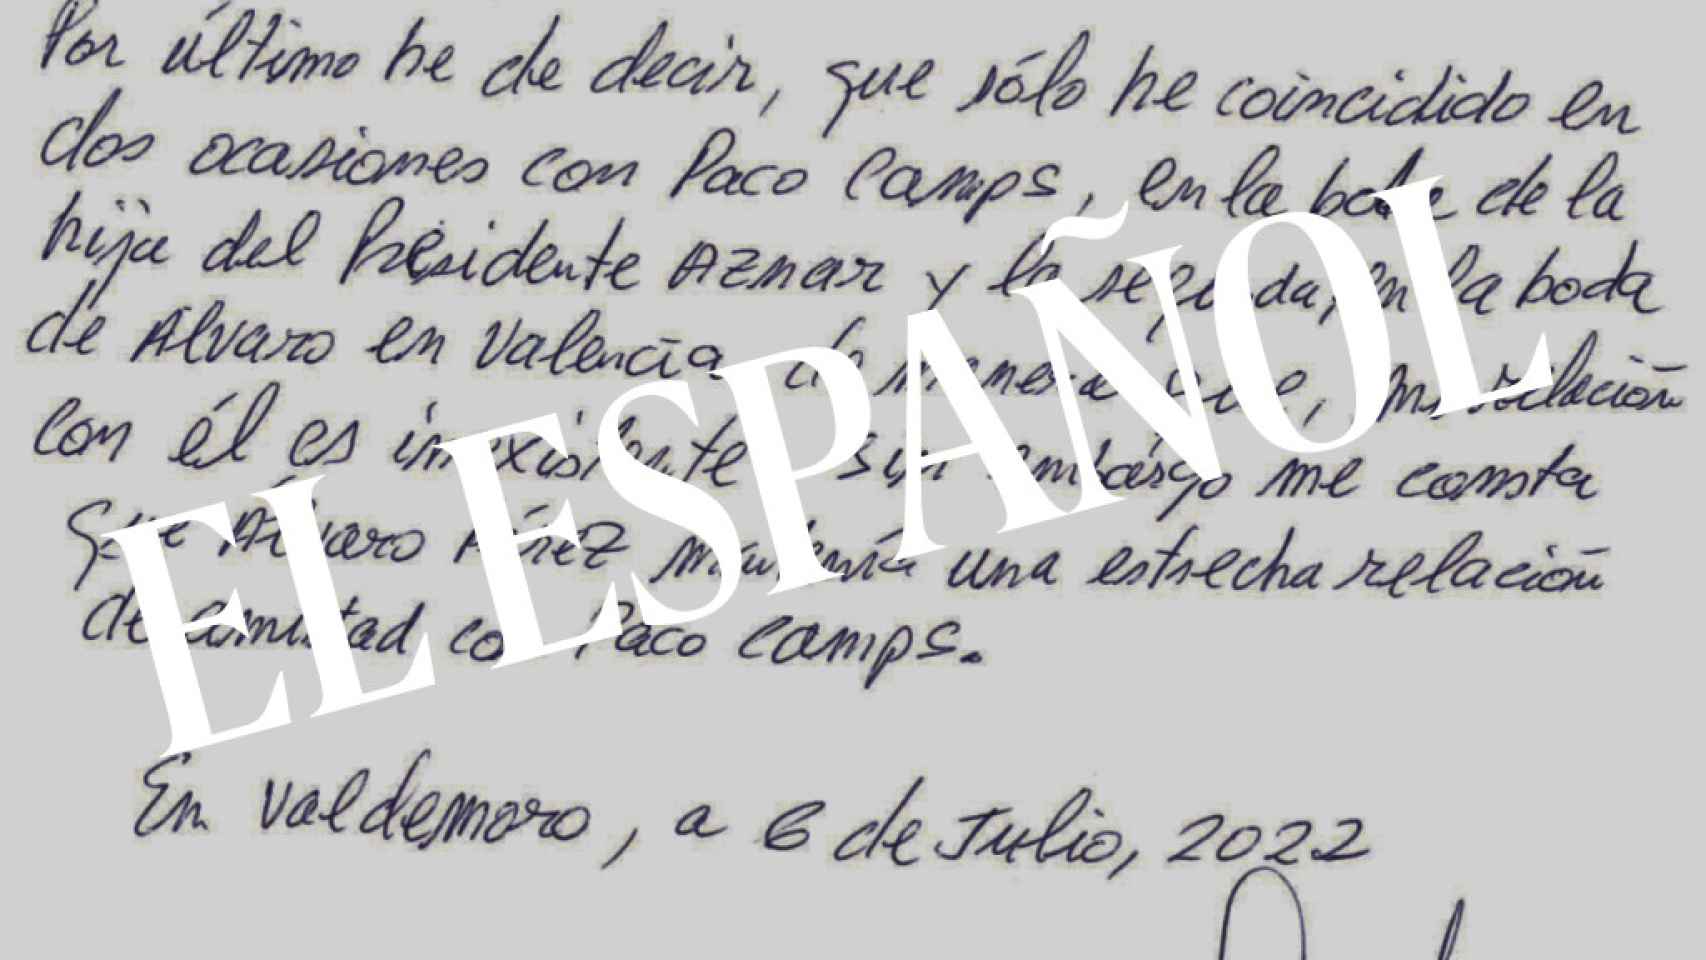 Correa relata la relación entre Álvaro Pérez y Camps.